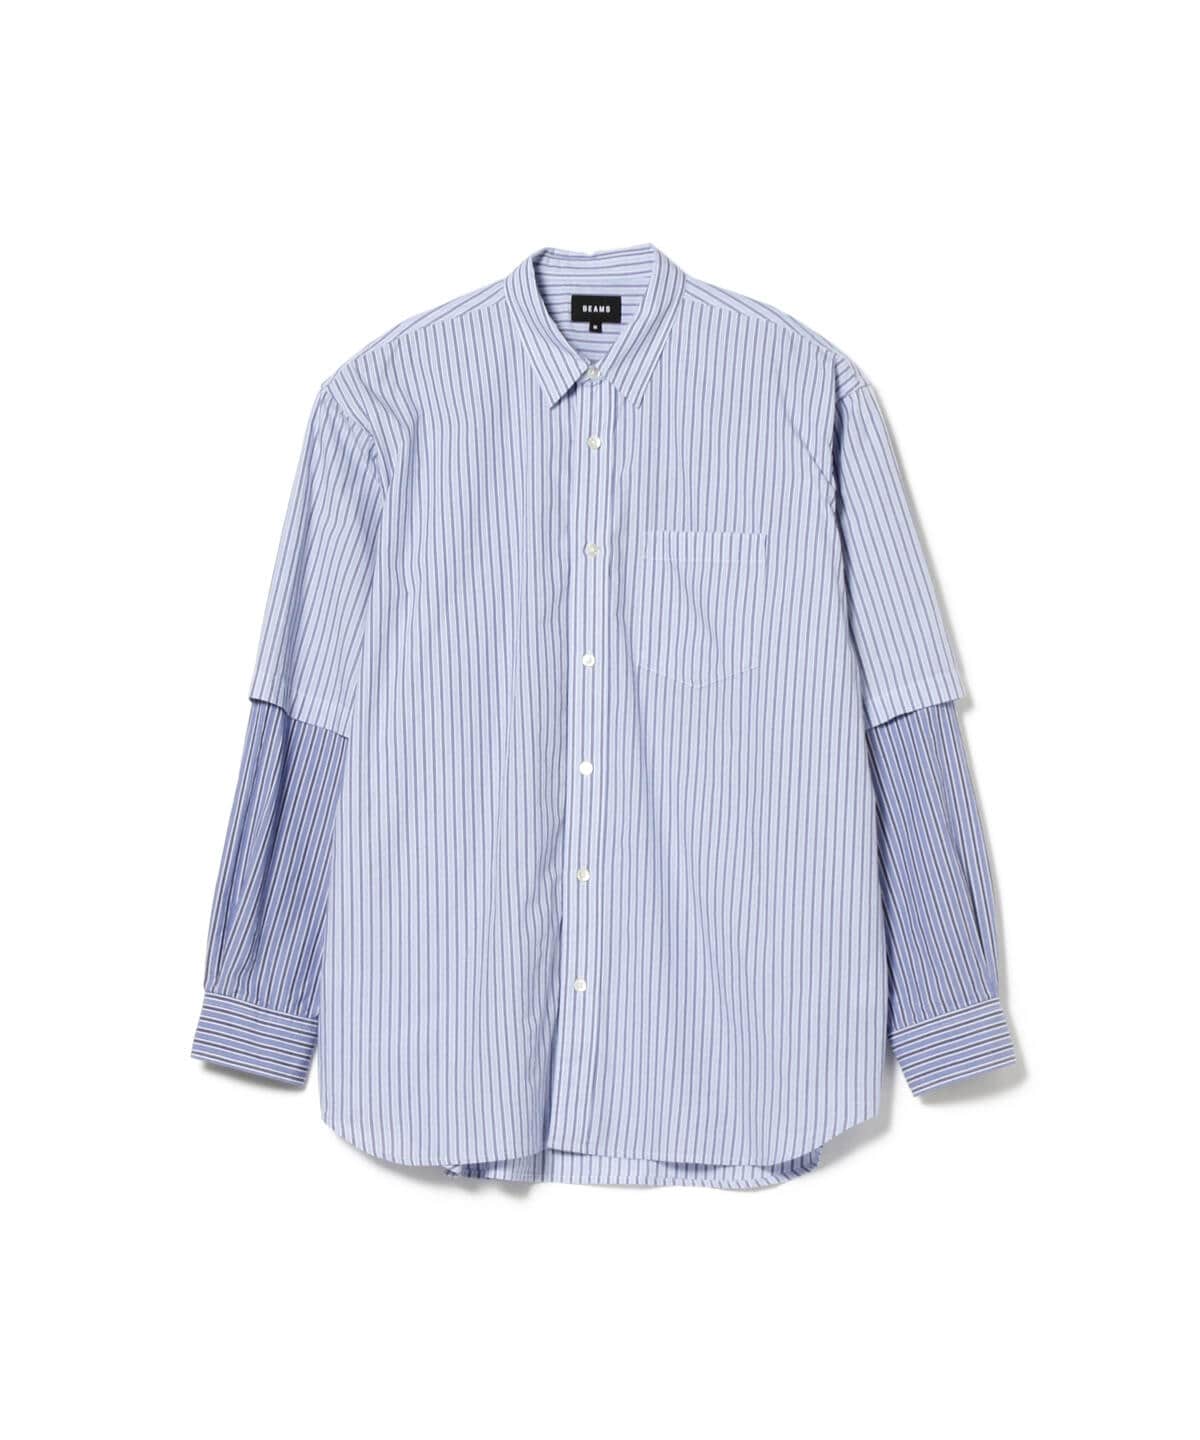 BEAMS [BEAMS] BEAMS / Fake layered shirts (shirts/blouses 